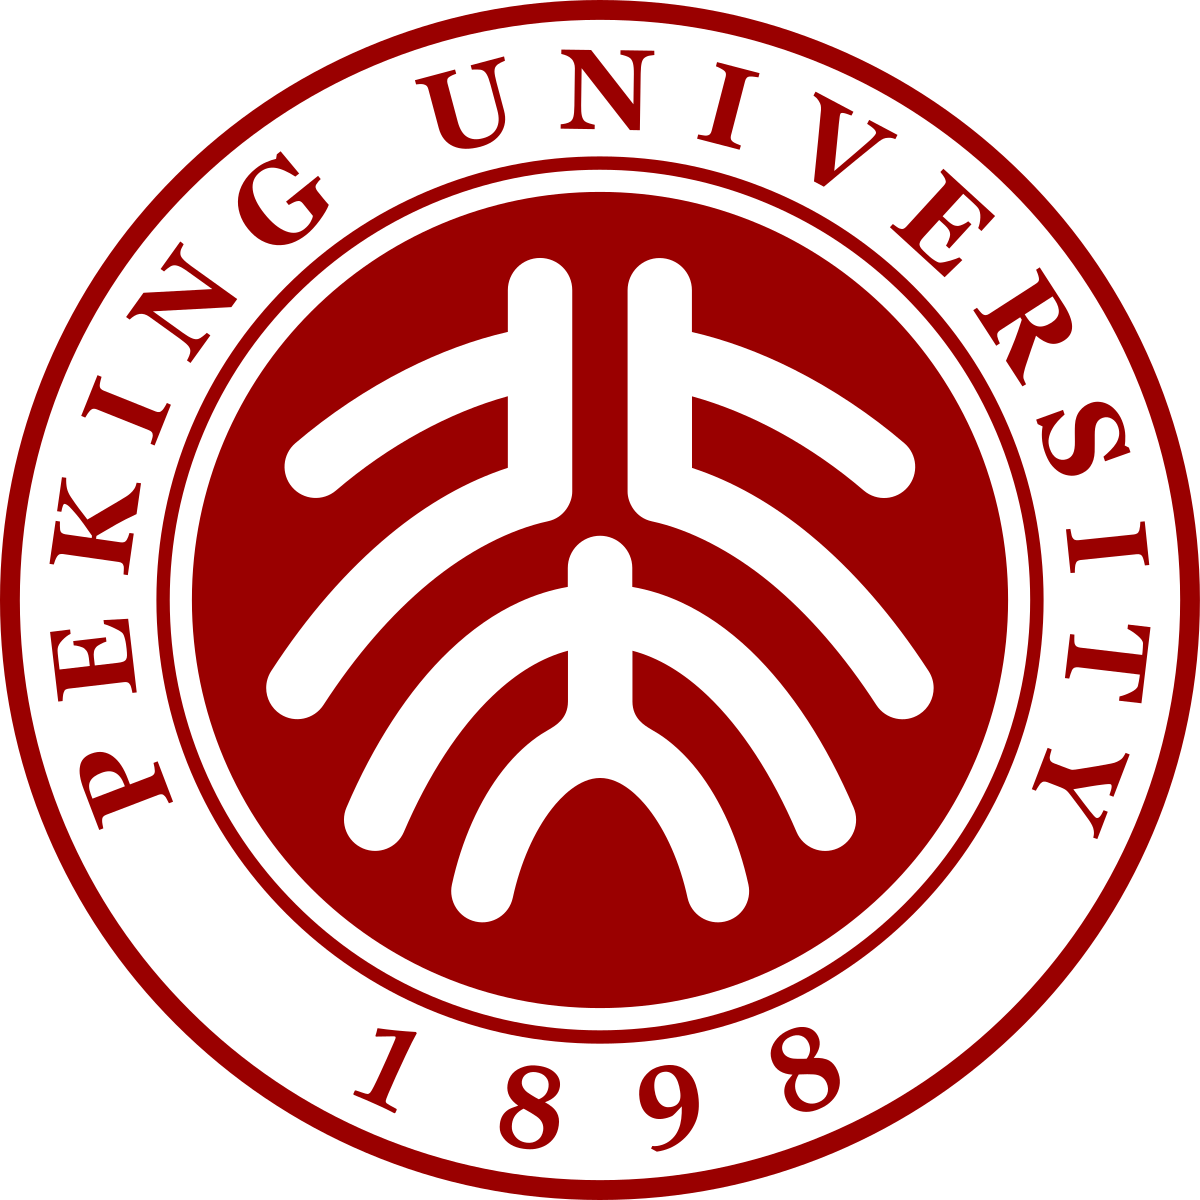 Đại học Bắc Kinh – Wikipedia tiếng Việt